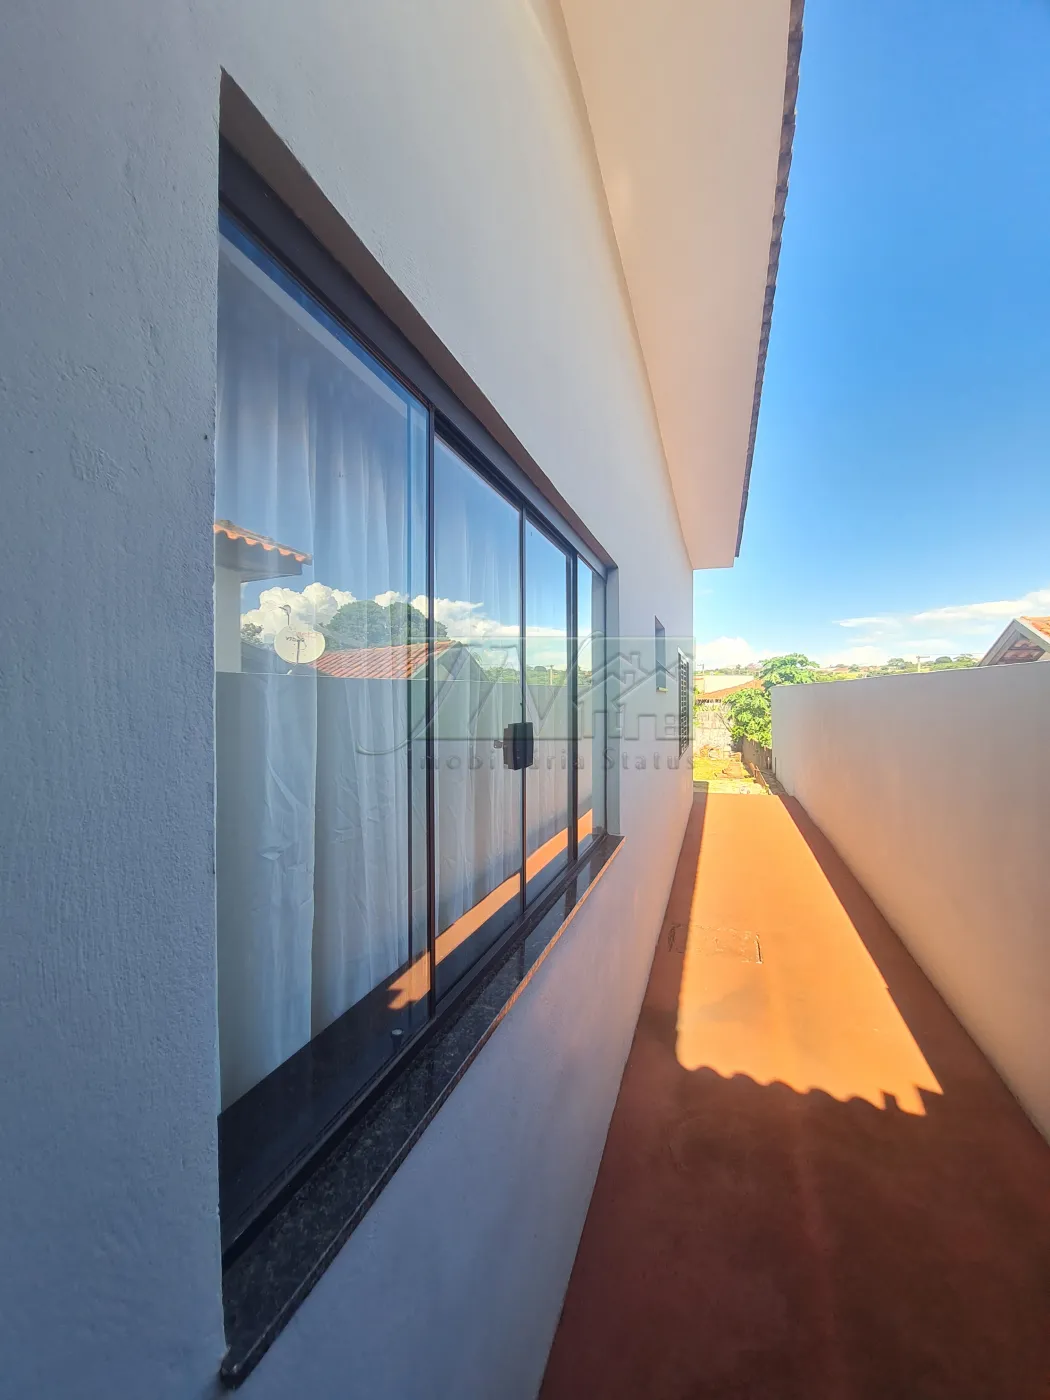 Alugar Residenciais / Casas em Santa Cruz do Rio Pardo R$ 1.000,00 - Foto 14